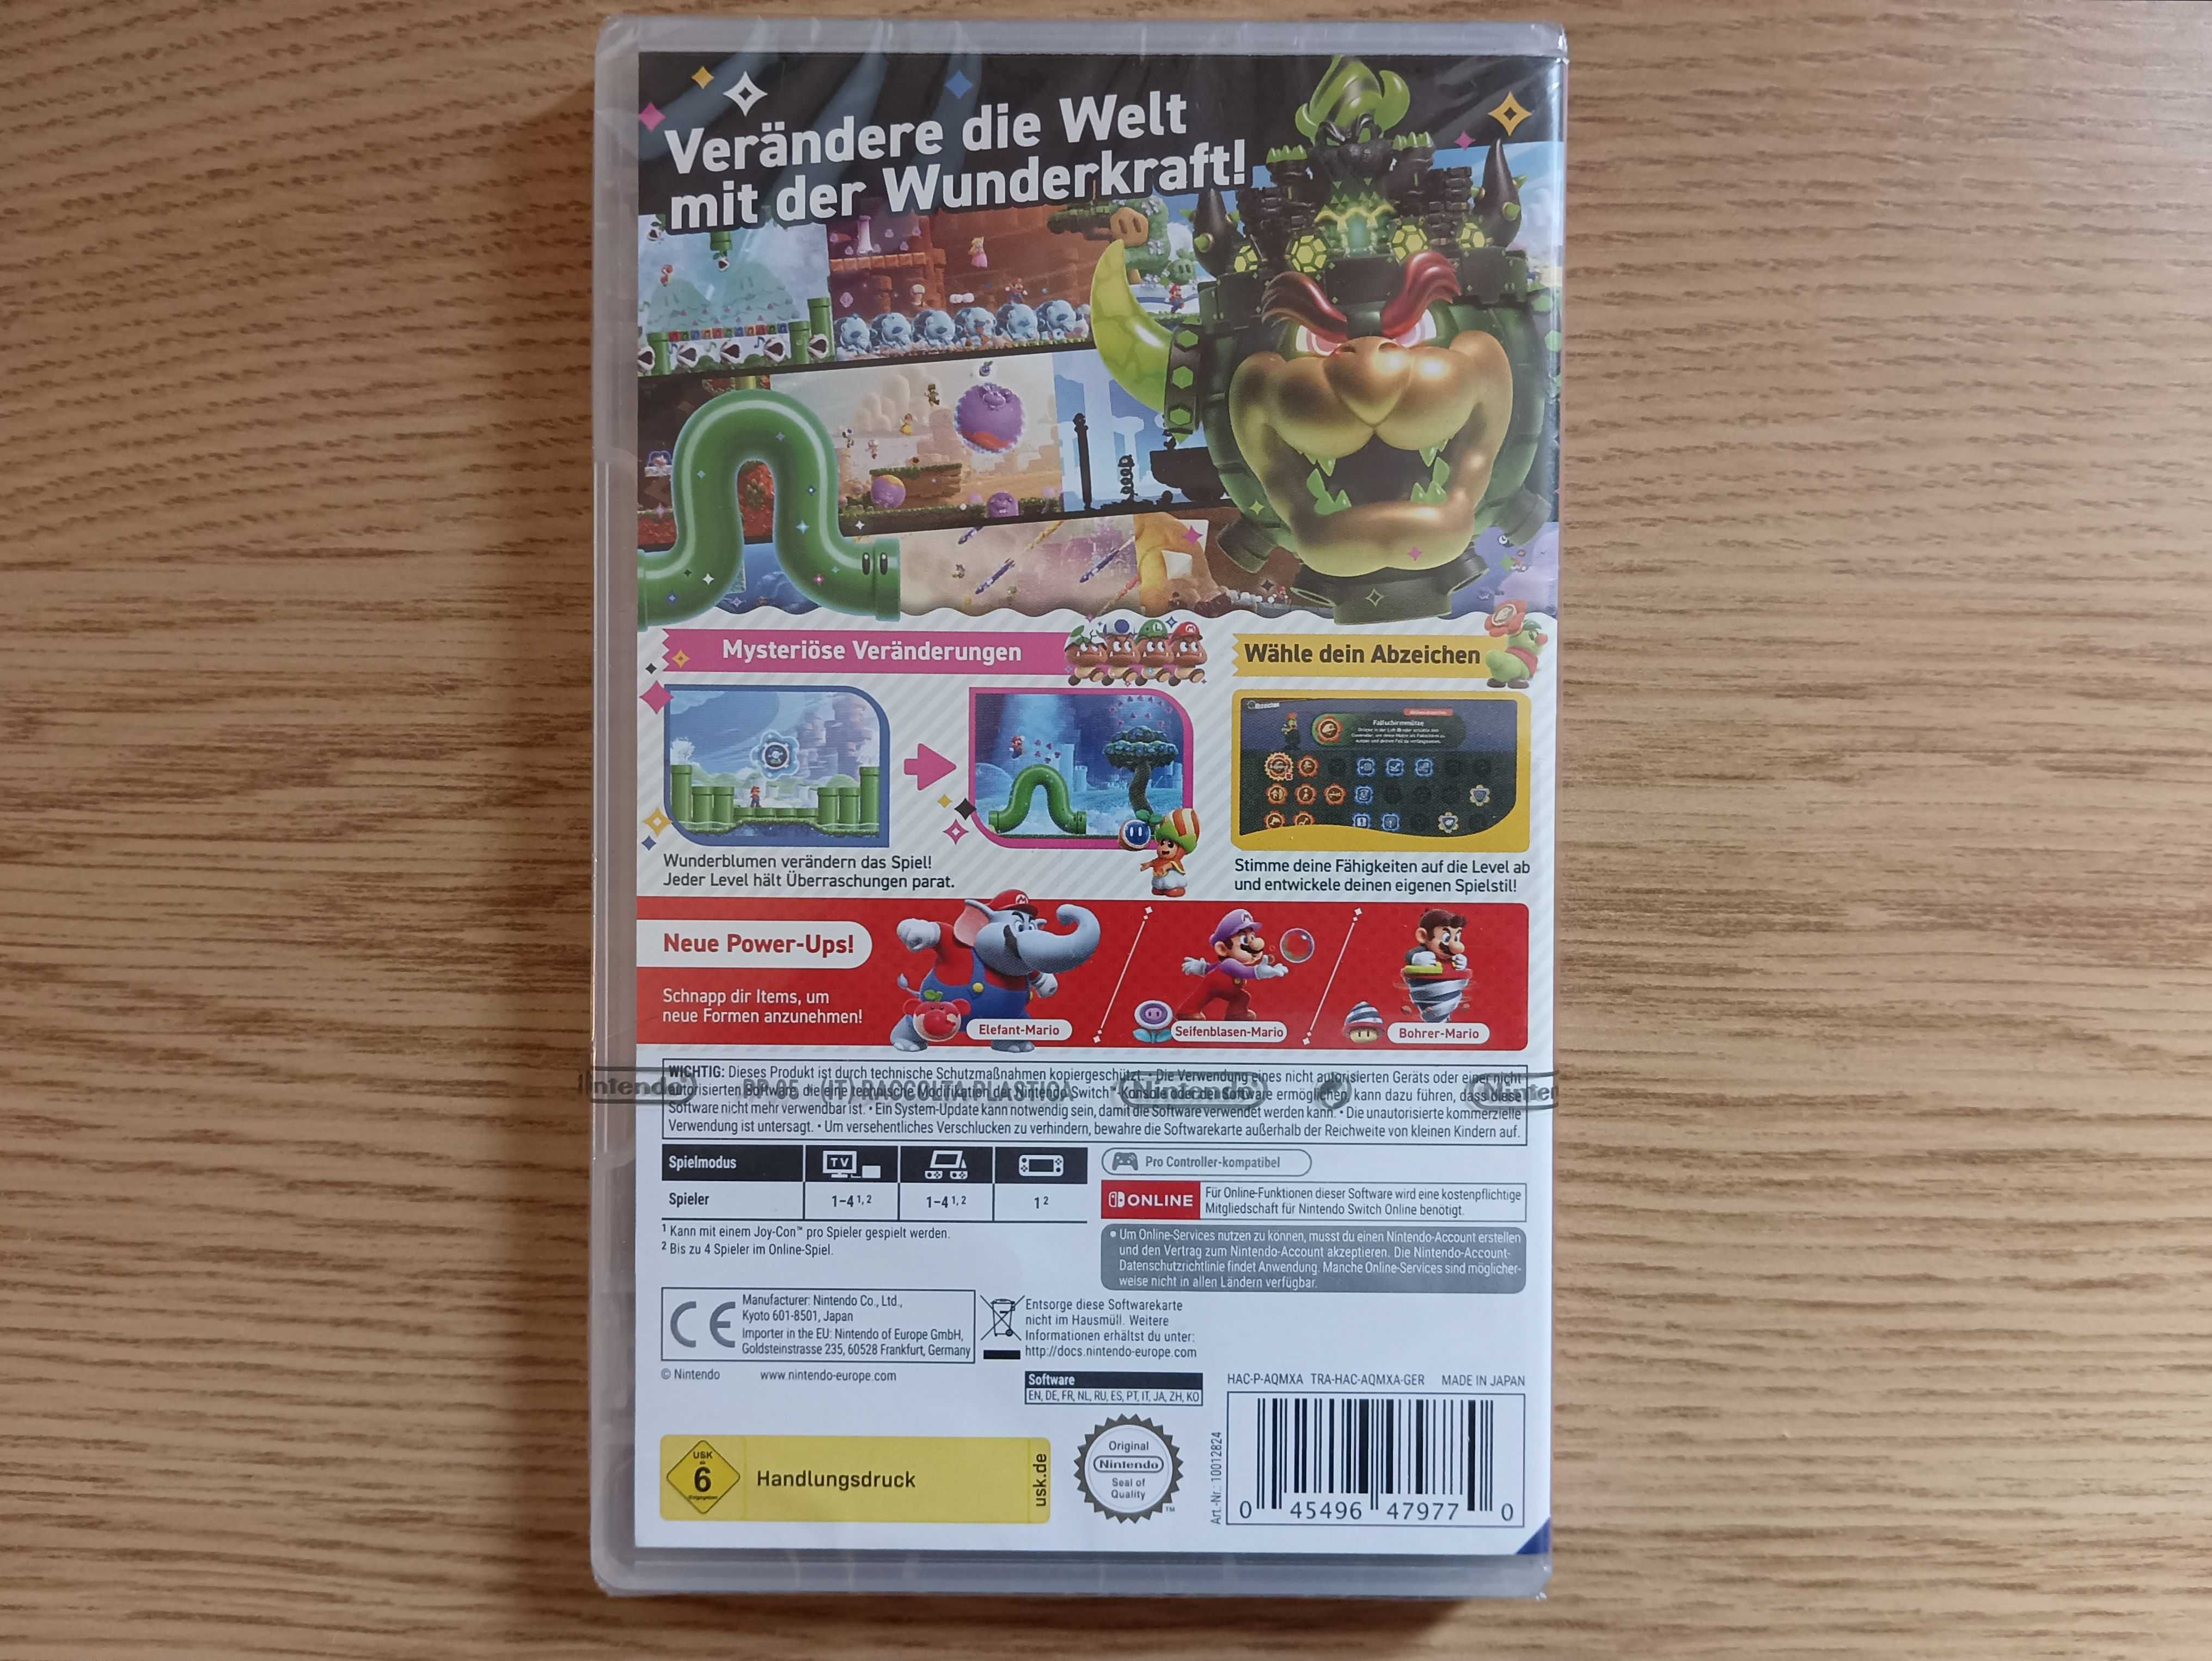 Super Mario Bros. Wonder na Nintendo Switch (nowa w folii)